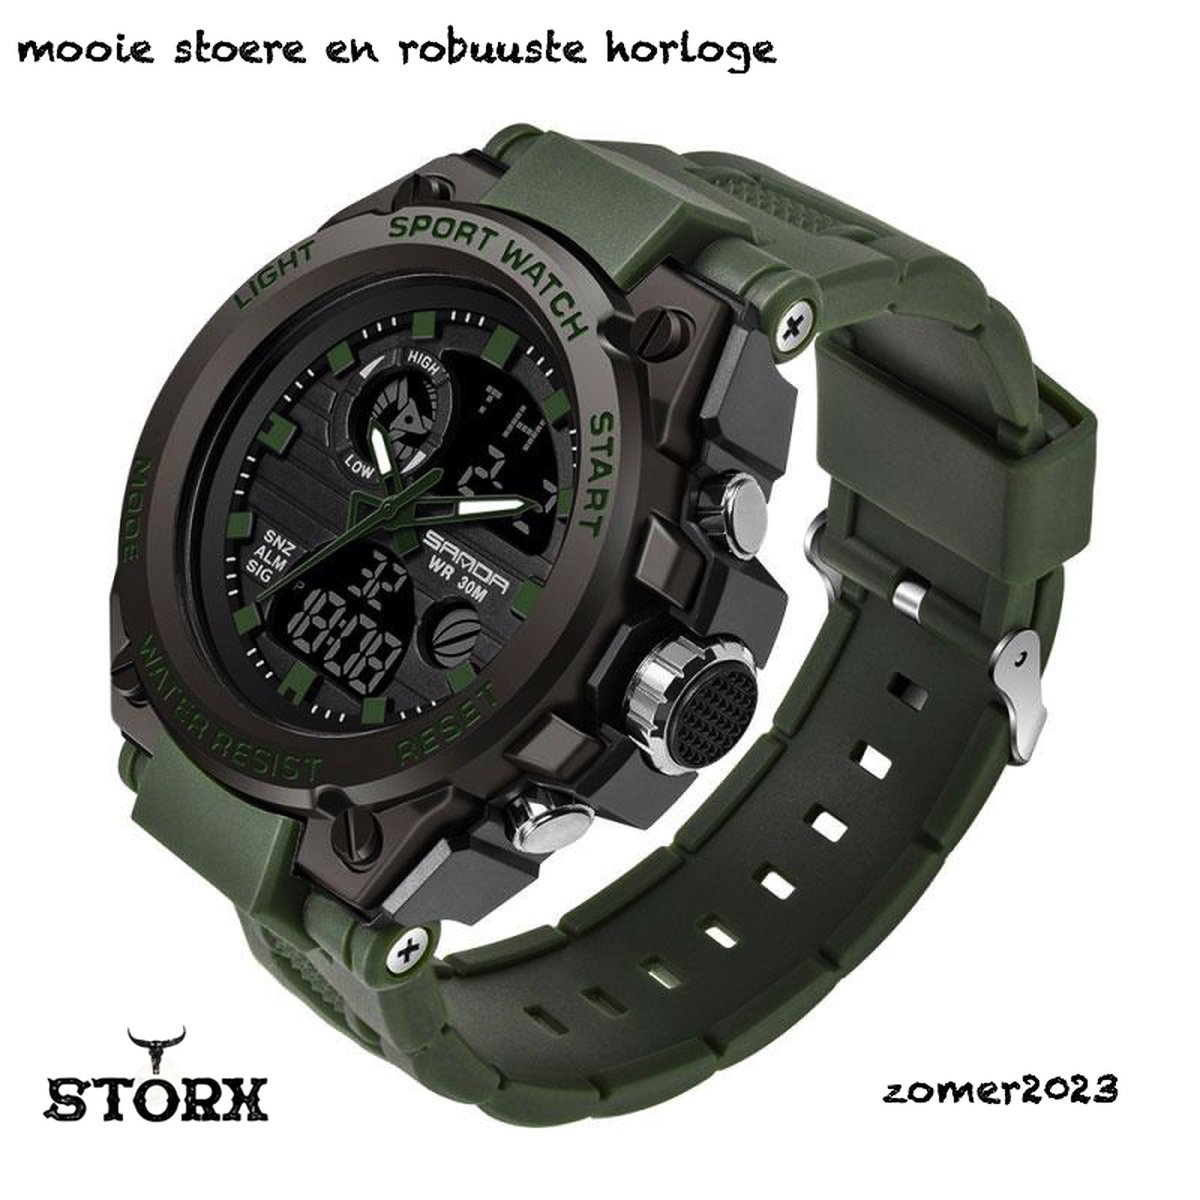 Horloge - Stoer - Mannen - Waterproof - Rubberen band - Mat - Groen - Trendy - Military watch - Smael - Cadeau Tip - Storx